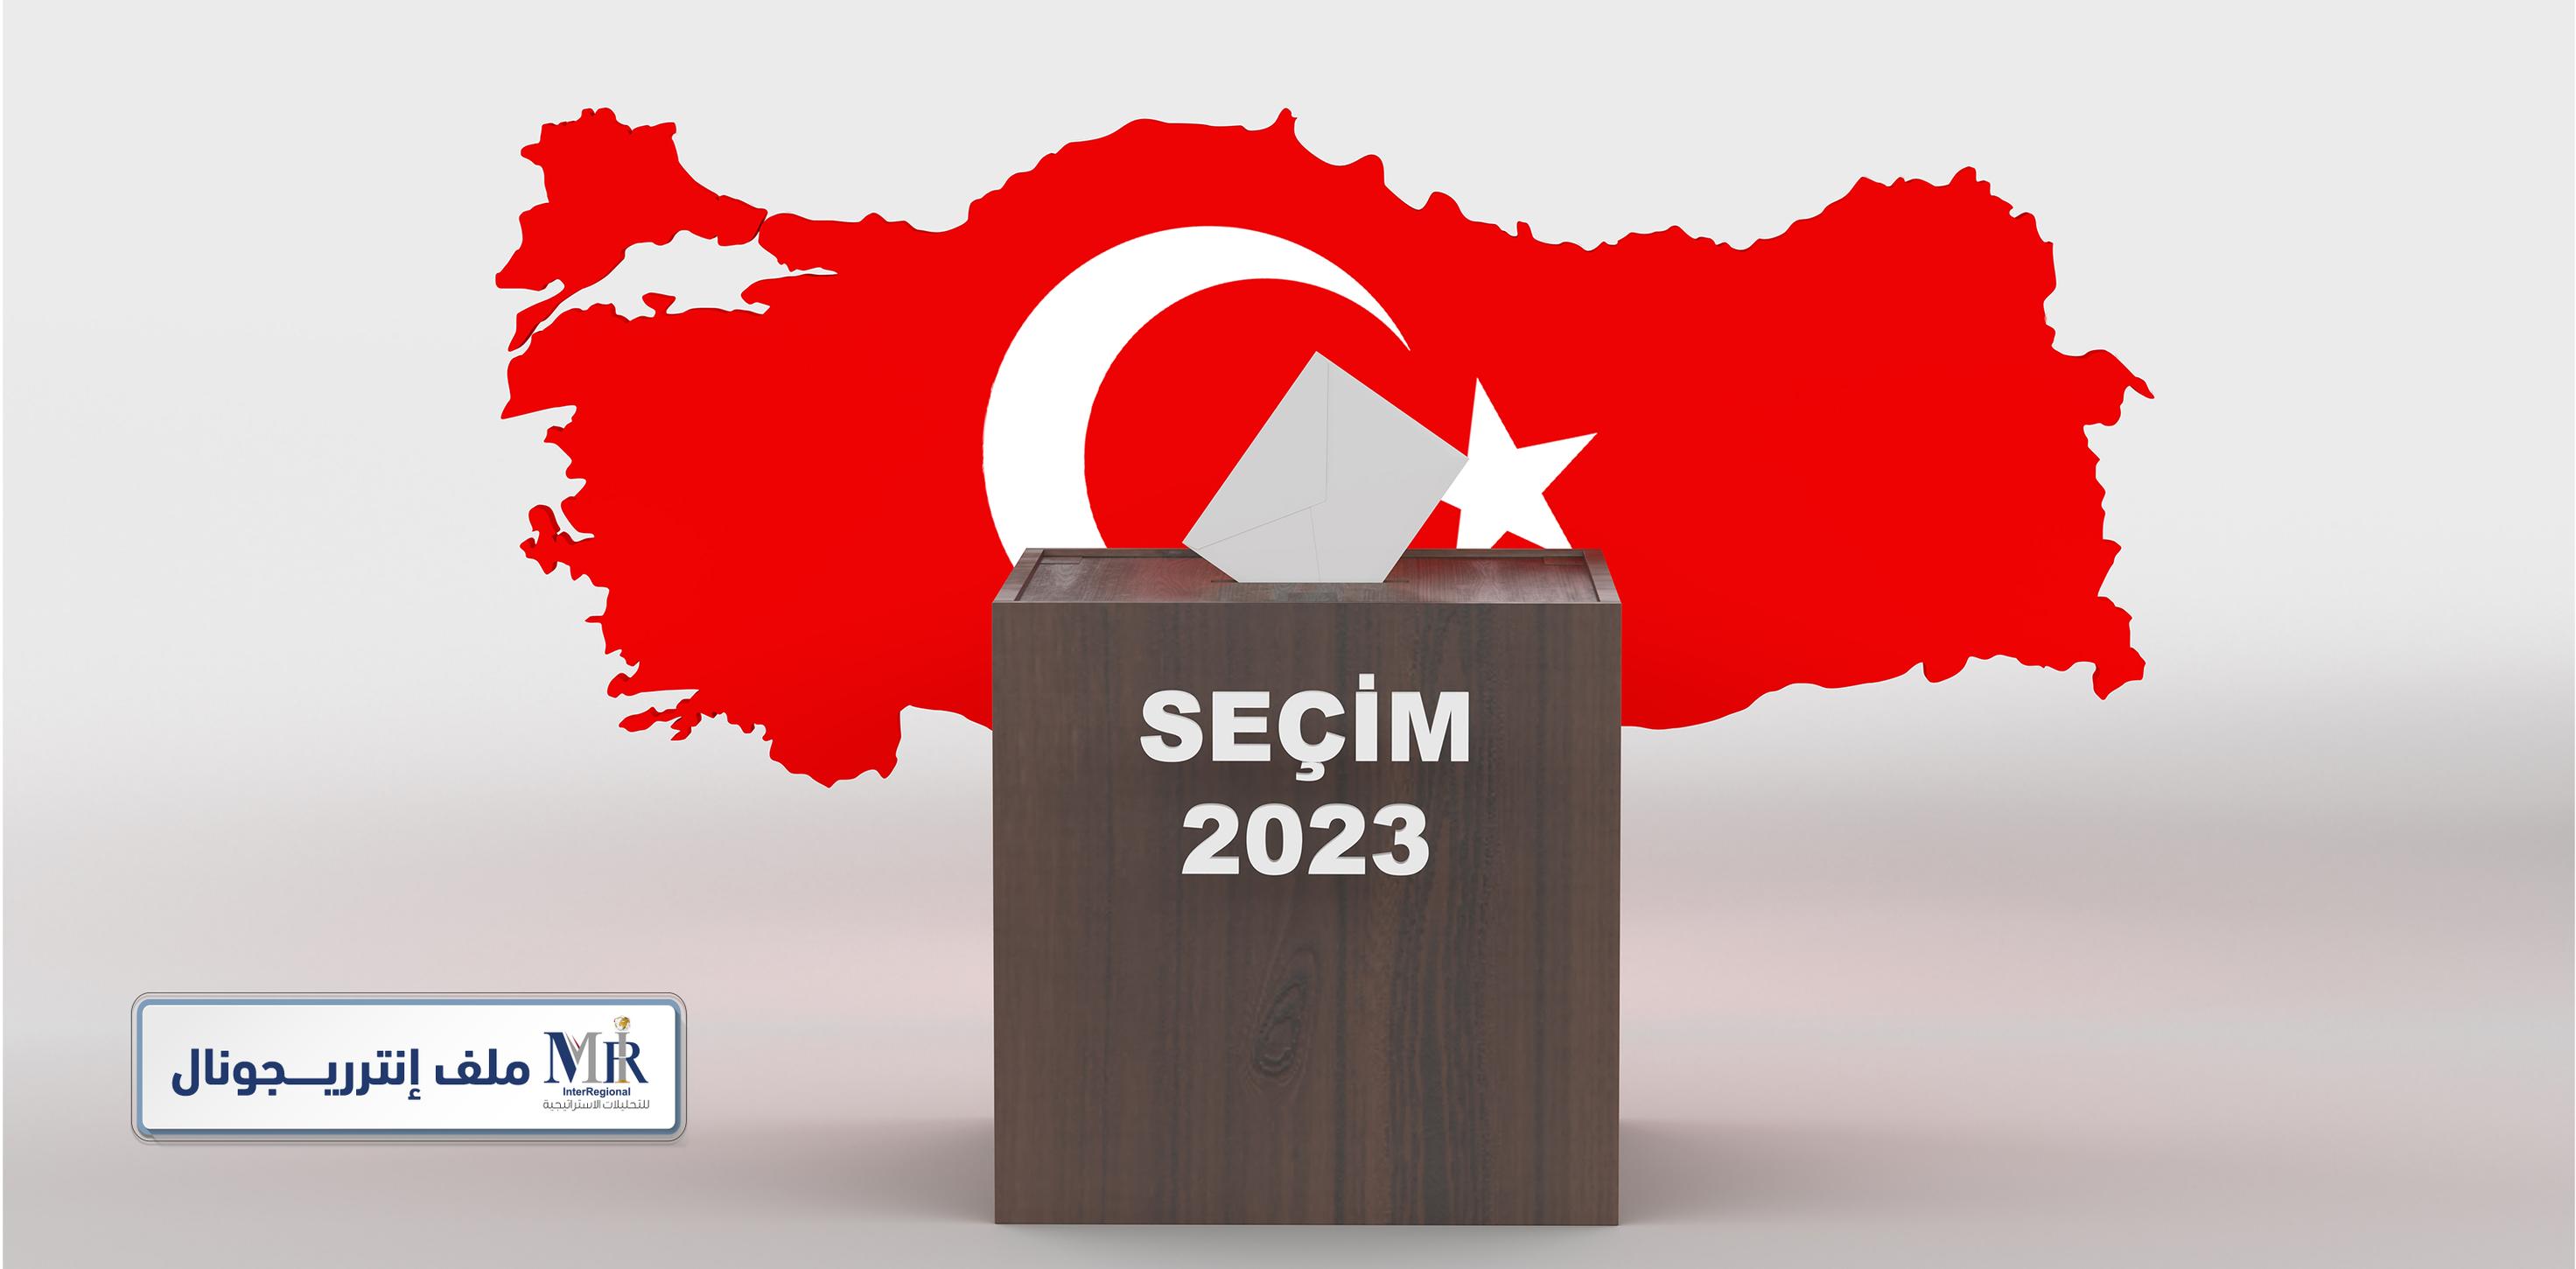 كيف تؤثر الانتخابات على مستقبل الدولة التركية؟ (ملف خاص)